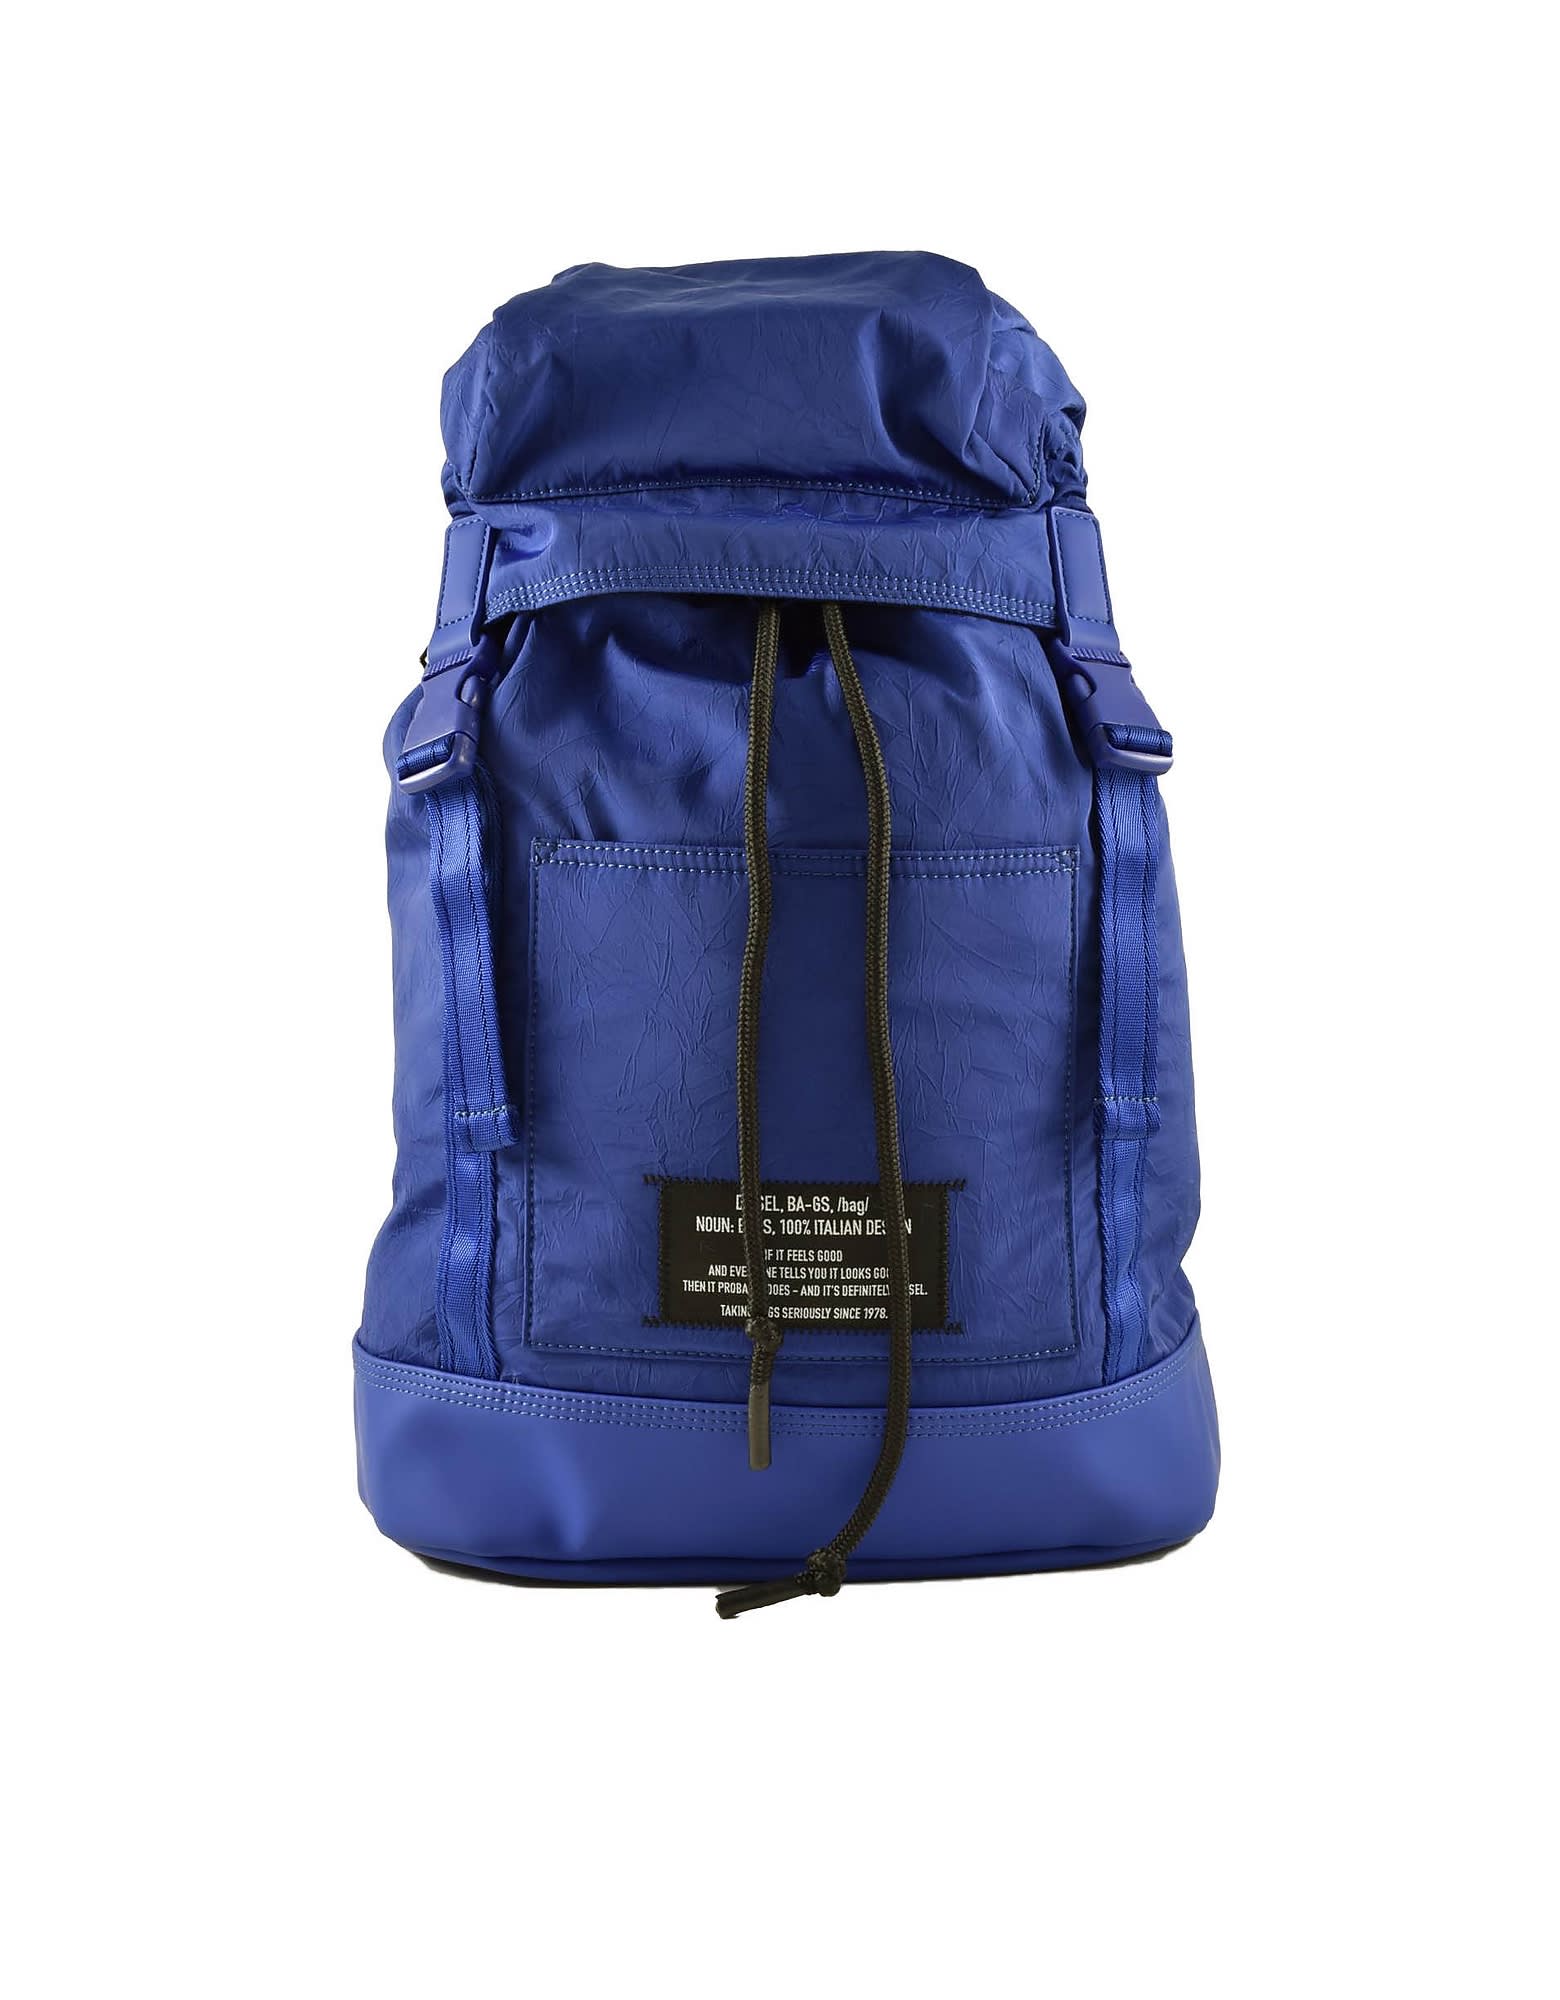 Diesel Menss Blue Backpack